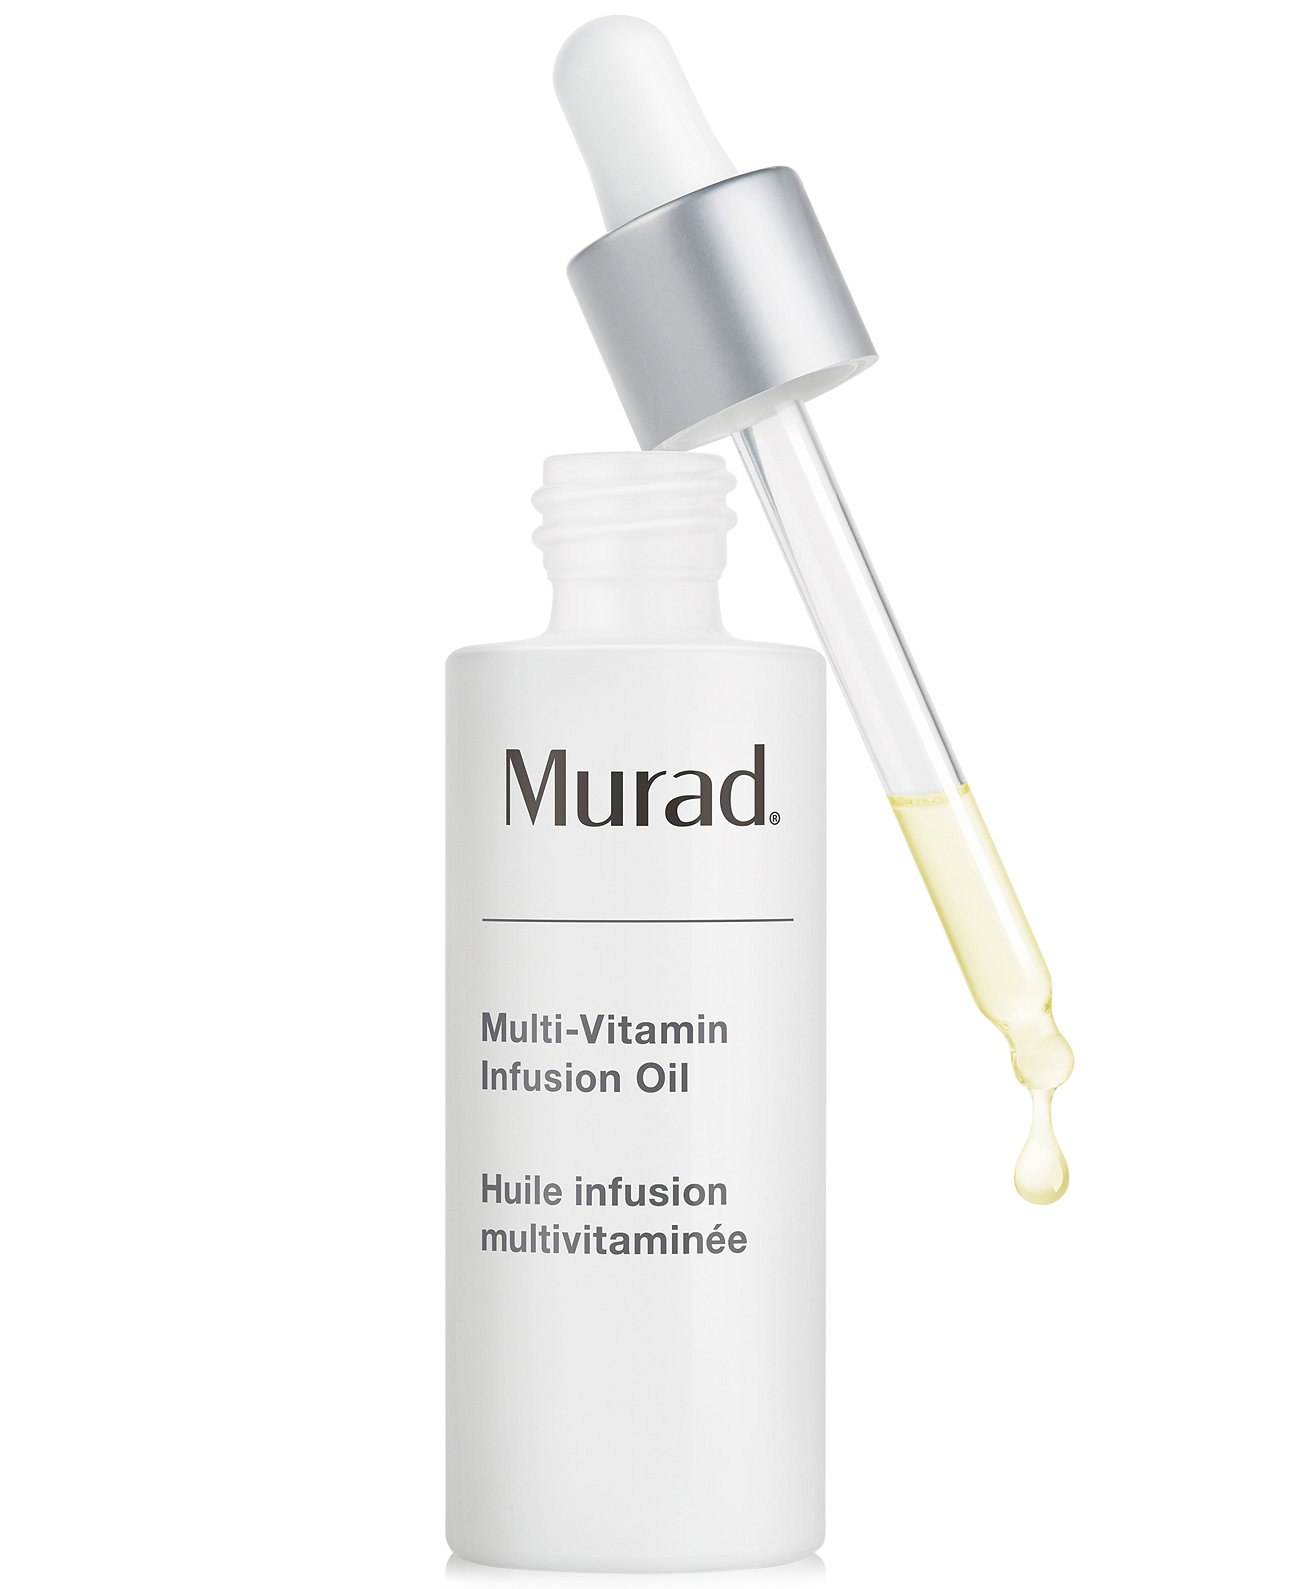 Мультивитаминное инфузионное масло, 1 унция. Murad